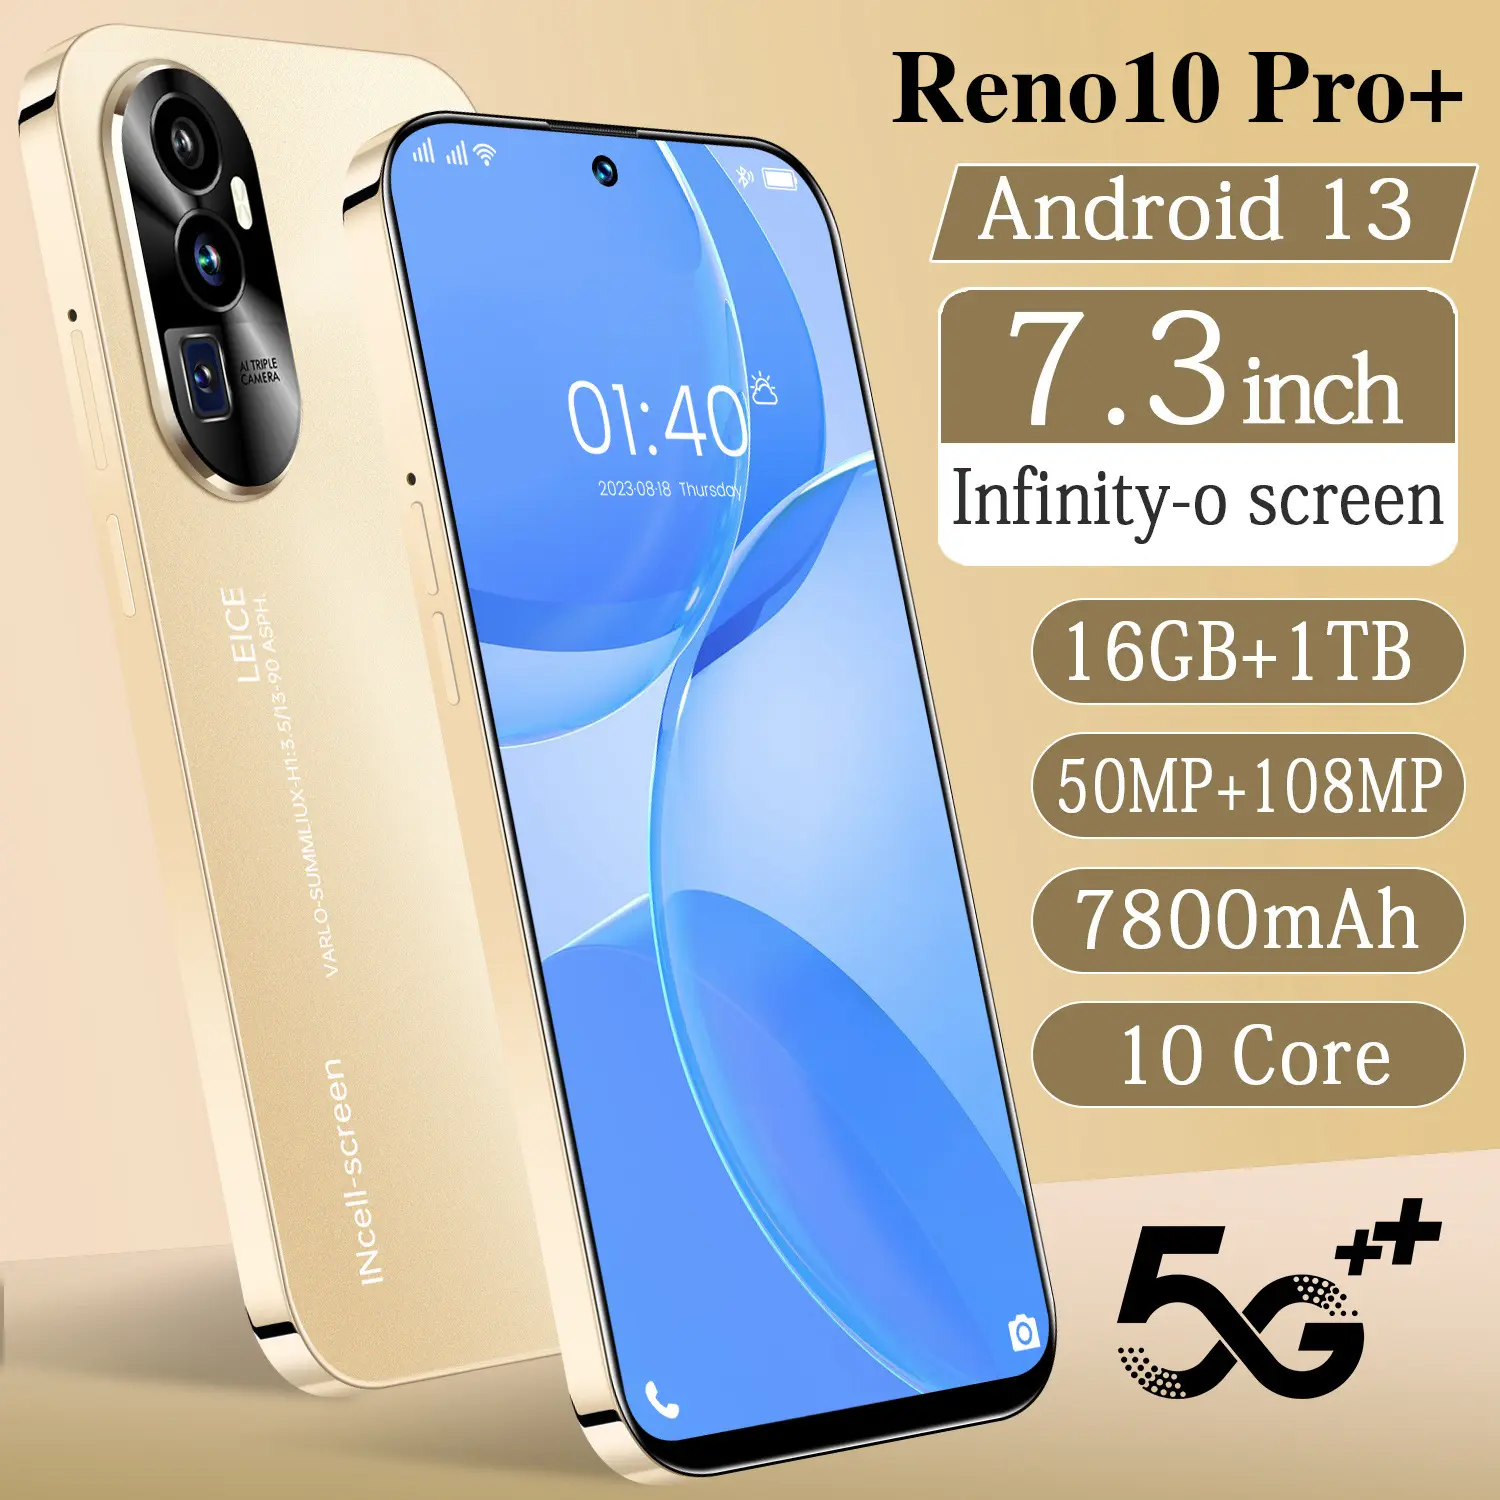 Telefone de venda quente Reno 10 PRO + original 7.3 polegadas 16GB + 1TB exibição completa do telefone celular Smartphone